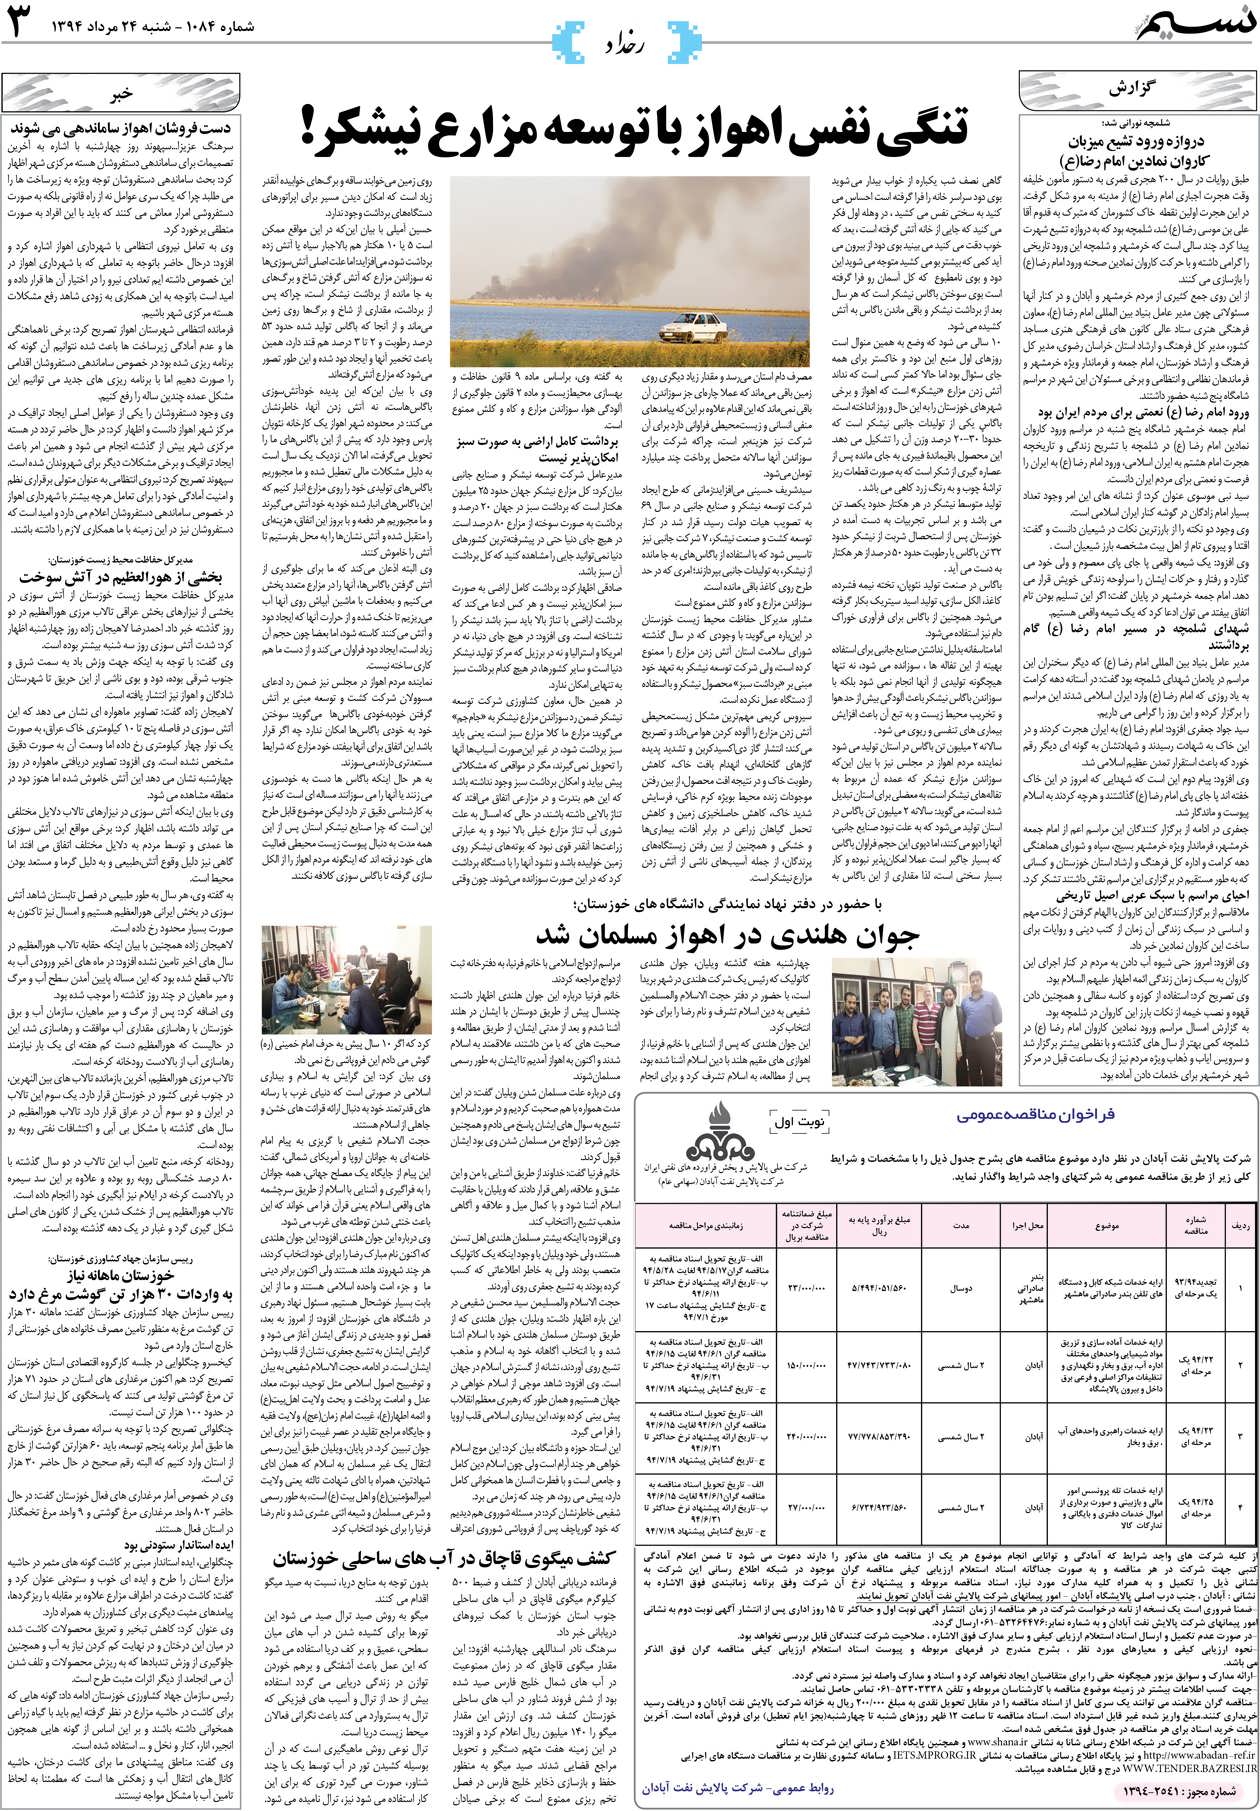 صفحه رخداد روزنامه نسیم شماره 1084